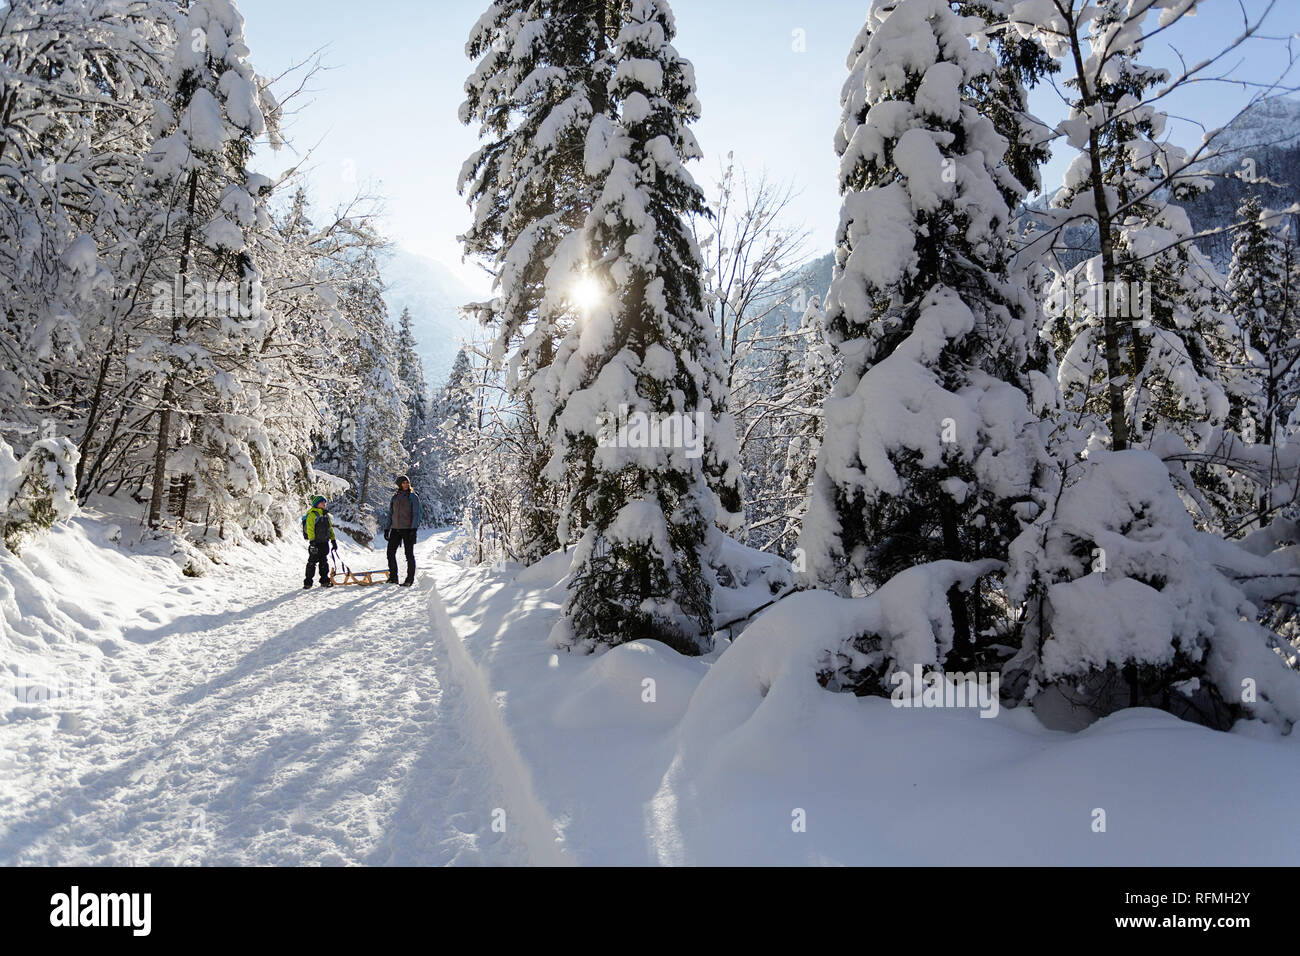 Invierno afuera puede ser creador de cuento de hadas para niños o adultos, madre e hijo parado en el sendero cubierto de nieve con trineos, Eslovenia, Krnica valley Foto de stock